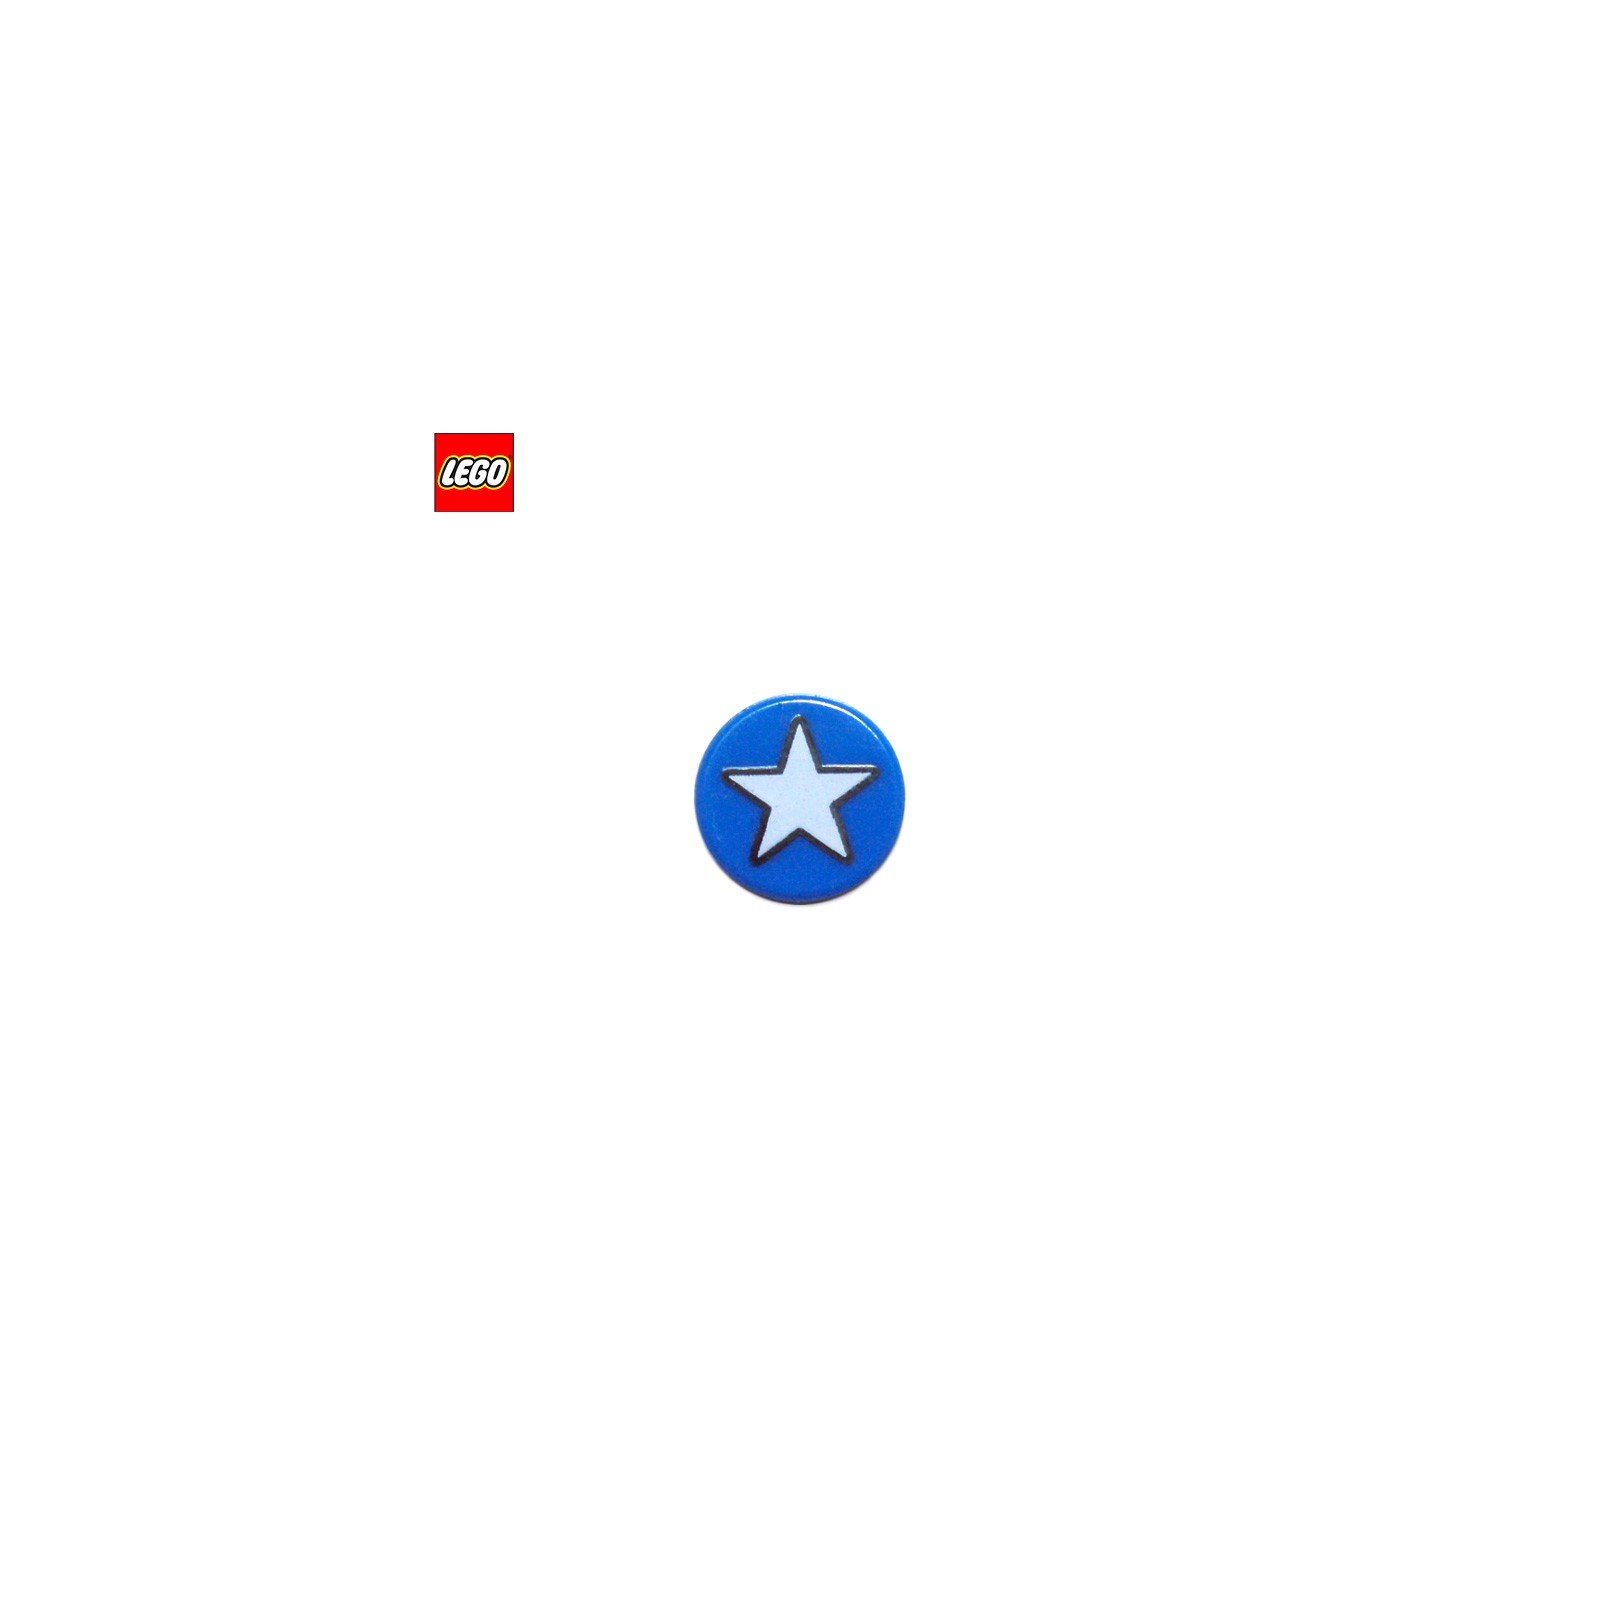 Tuile ronde 1x1 motif étoile - Pièce LEGO® 25201